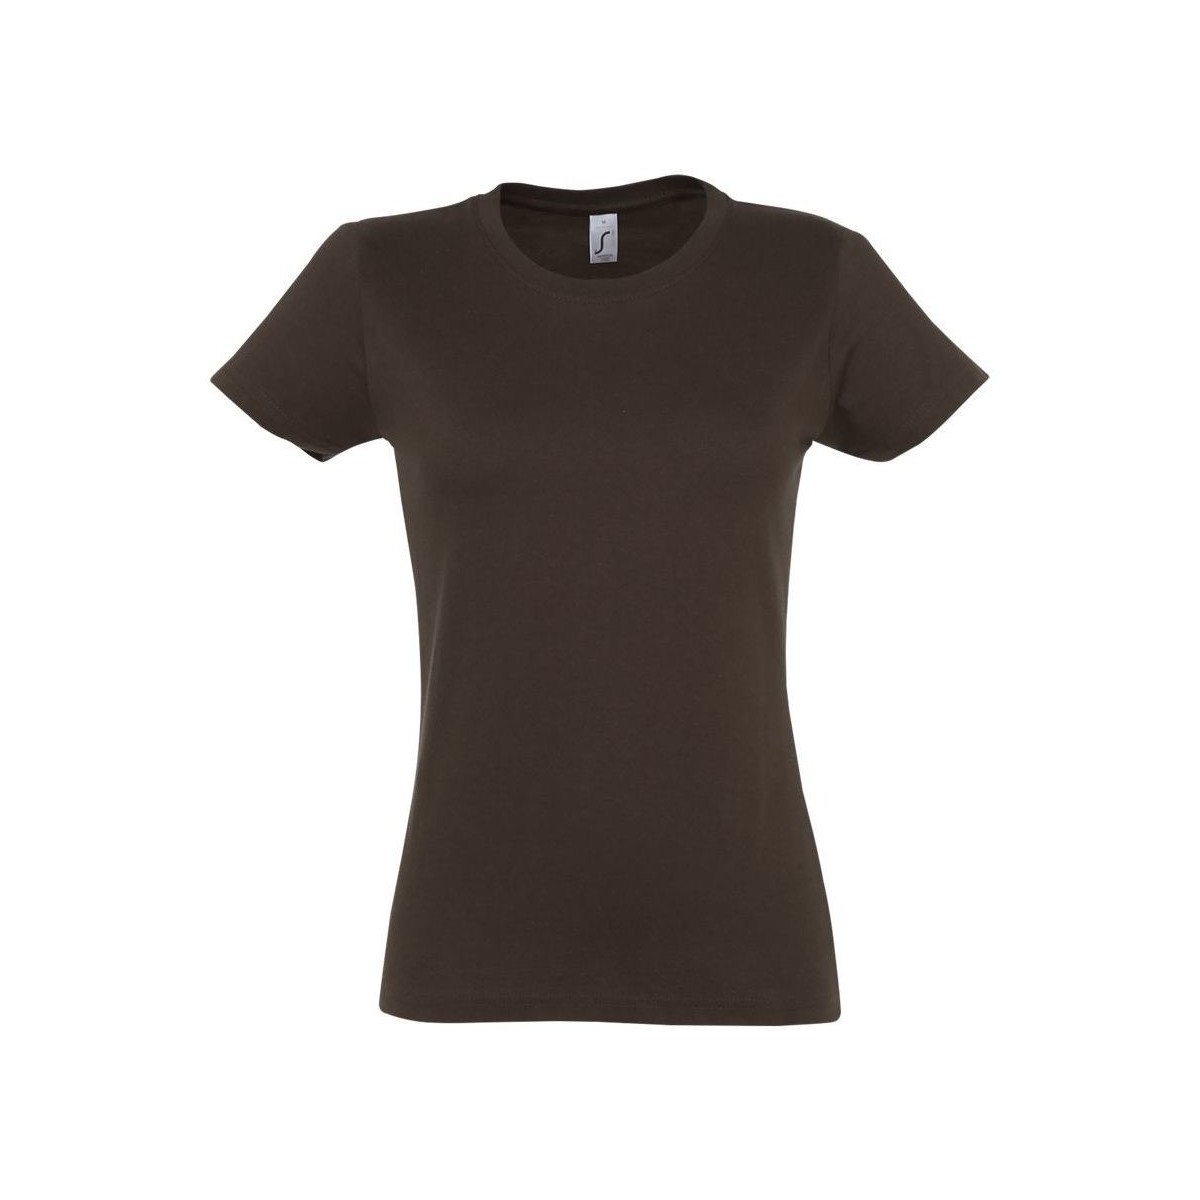 Abbigliamento Donna T-shirt maniche corte Sols IMPERIAL WOMEN - CAMISETA MUJER Marrone